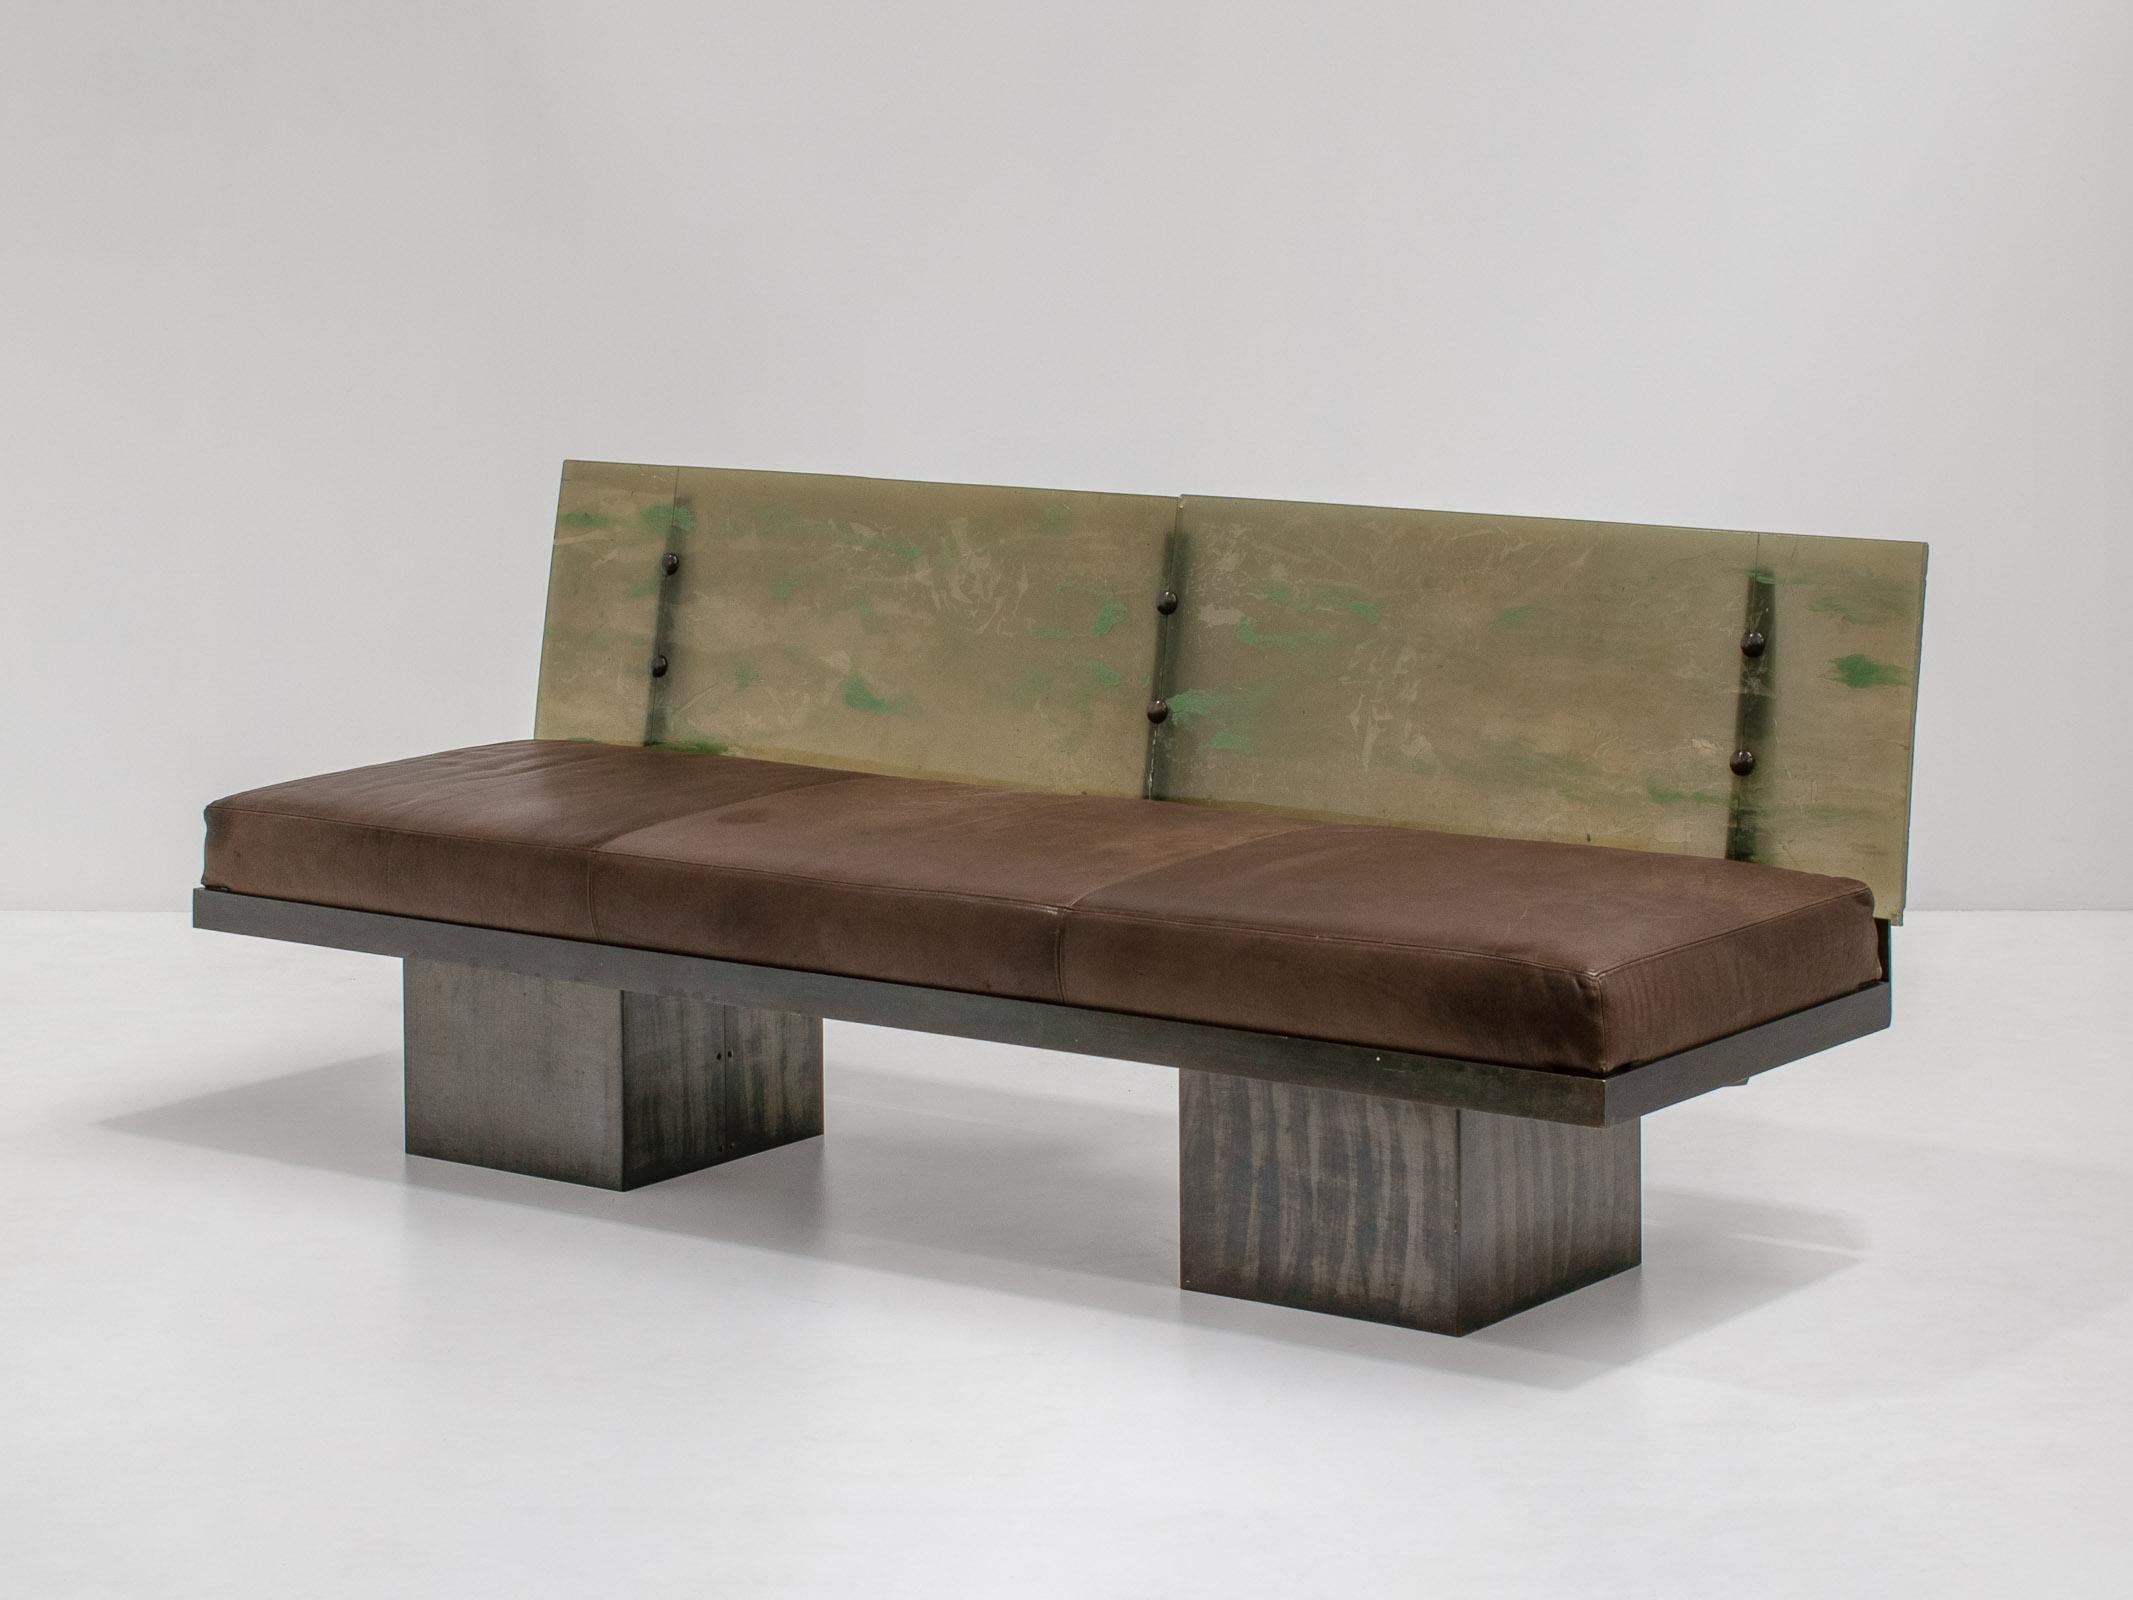 Sehr einzigartiges und ungewöhnliches Sofa. Inspiriert von der Ära Maria Pergay, Michel Boyer. Aus Südfrankreich stammend. Postmoderne.

Die Bank besteht aus verschiedenen MATERIALEN, die eine schöne Komposition ergeben. Das Gestell des Sofas ist